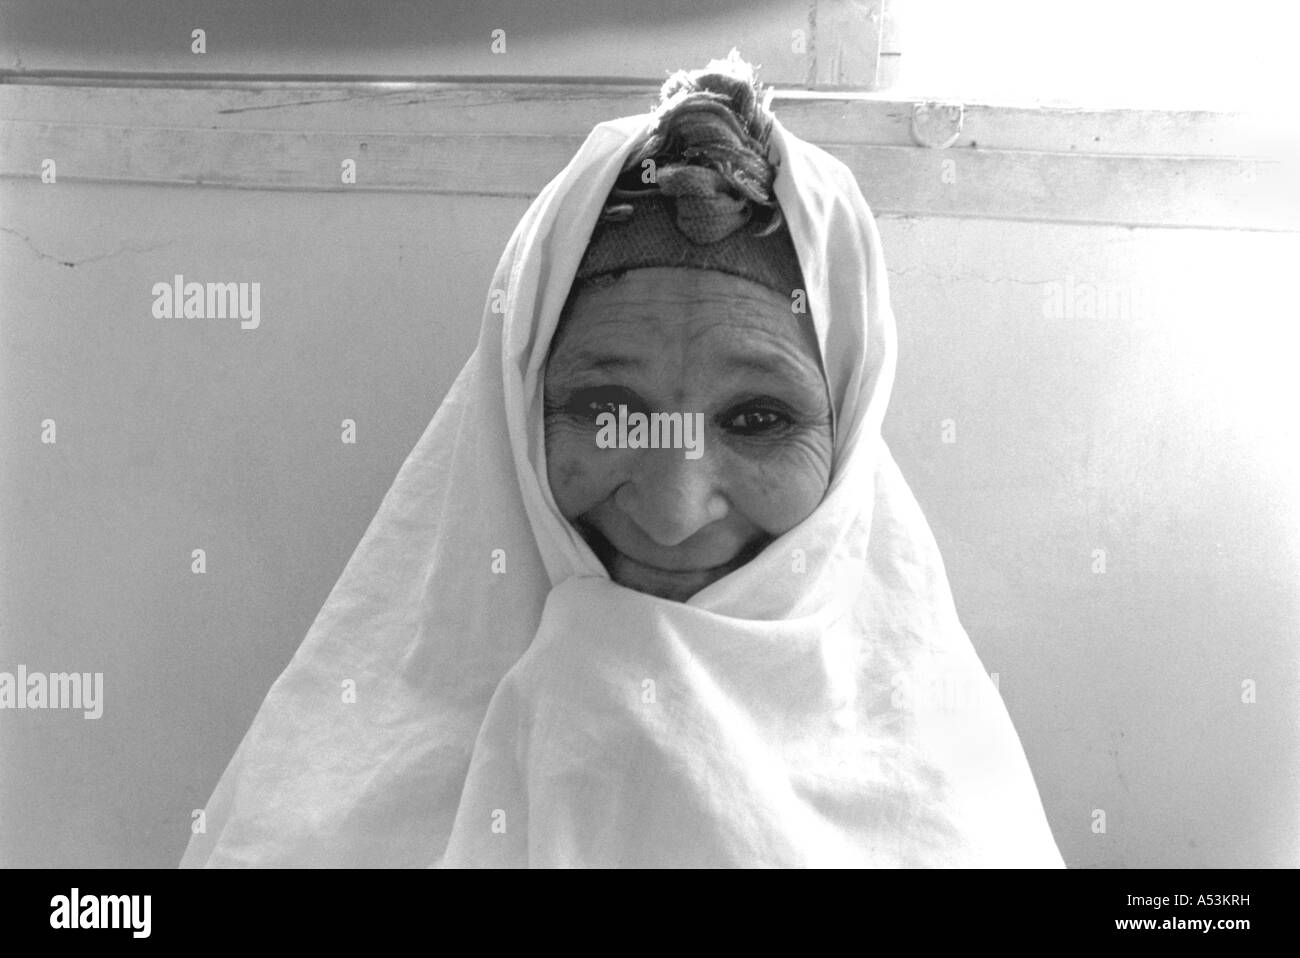 Painet ha1311 111 noir et blanc femmes âgées islam femme Bou Saada Algérie pays économiquement moins nation en développement Banque D'Images